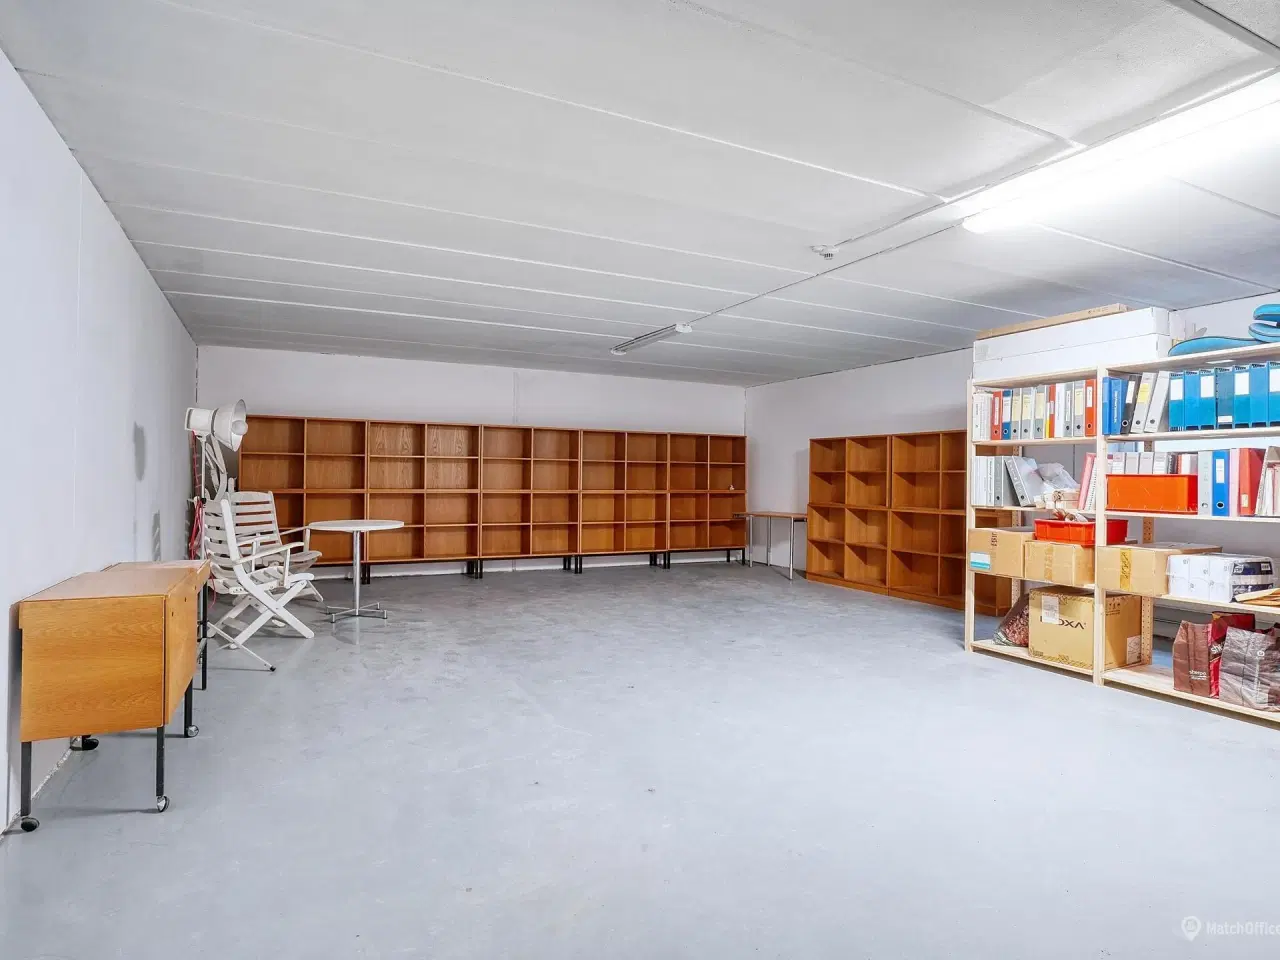 Billede 9 - Flotte nyrenoverede kontorlokaler. velbeliggende i et populært erhvervsområde i Søborg.